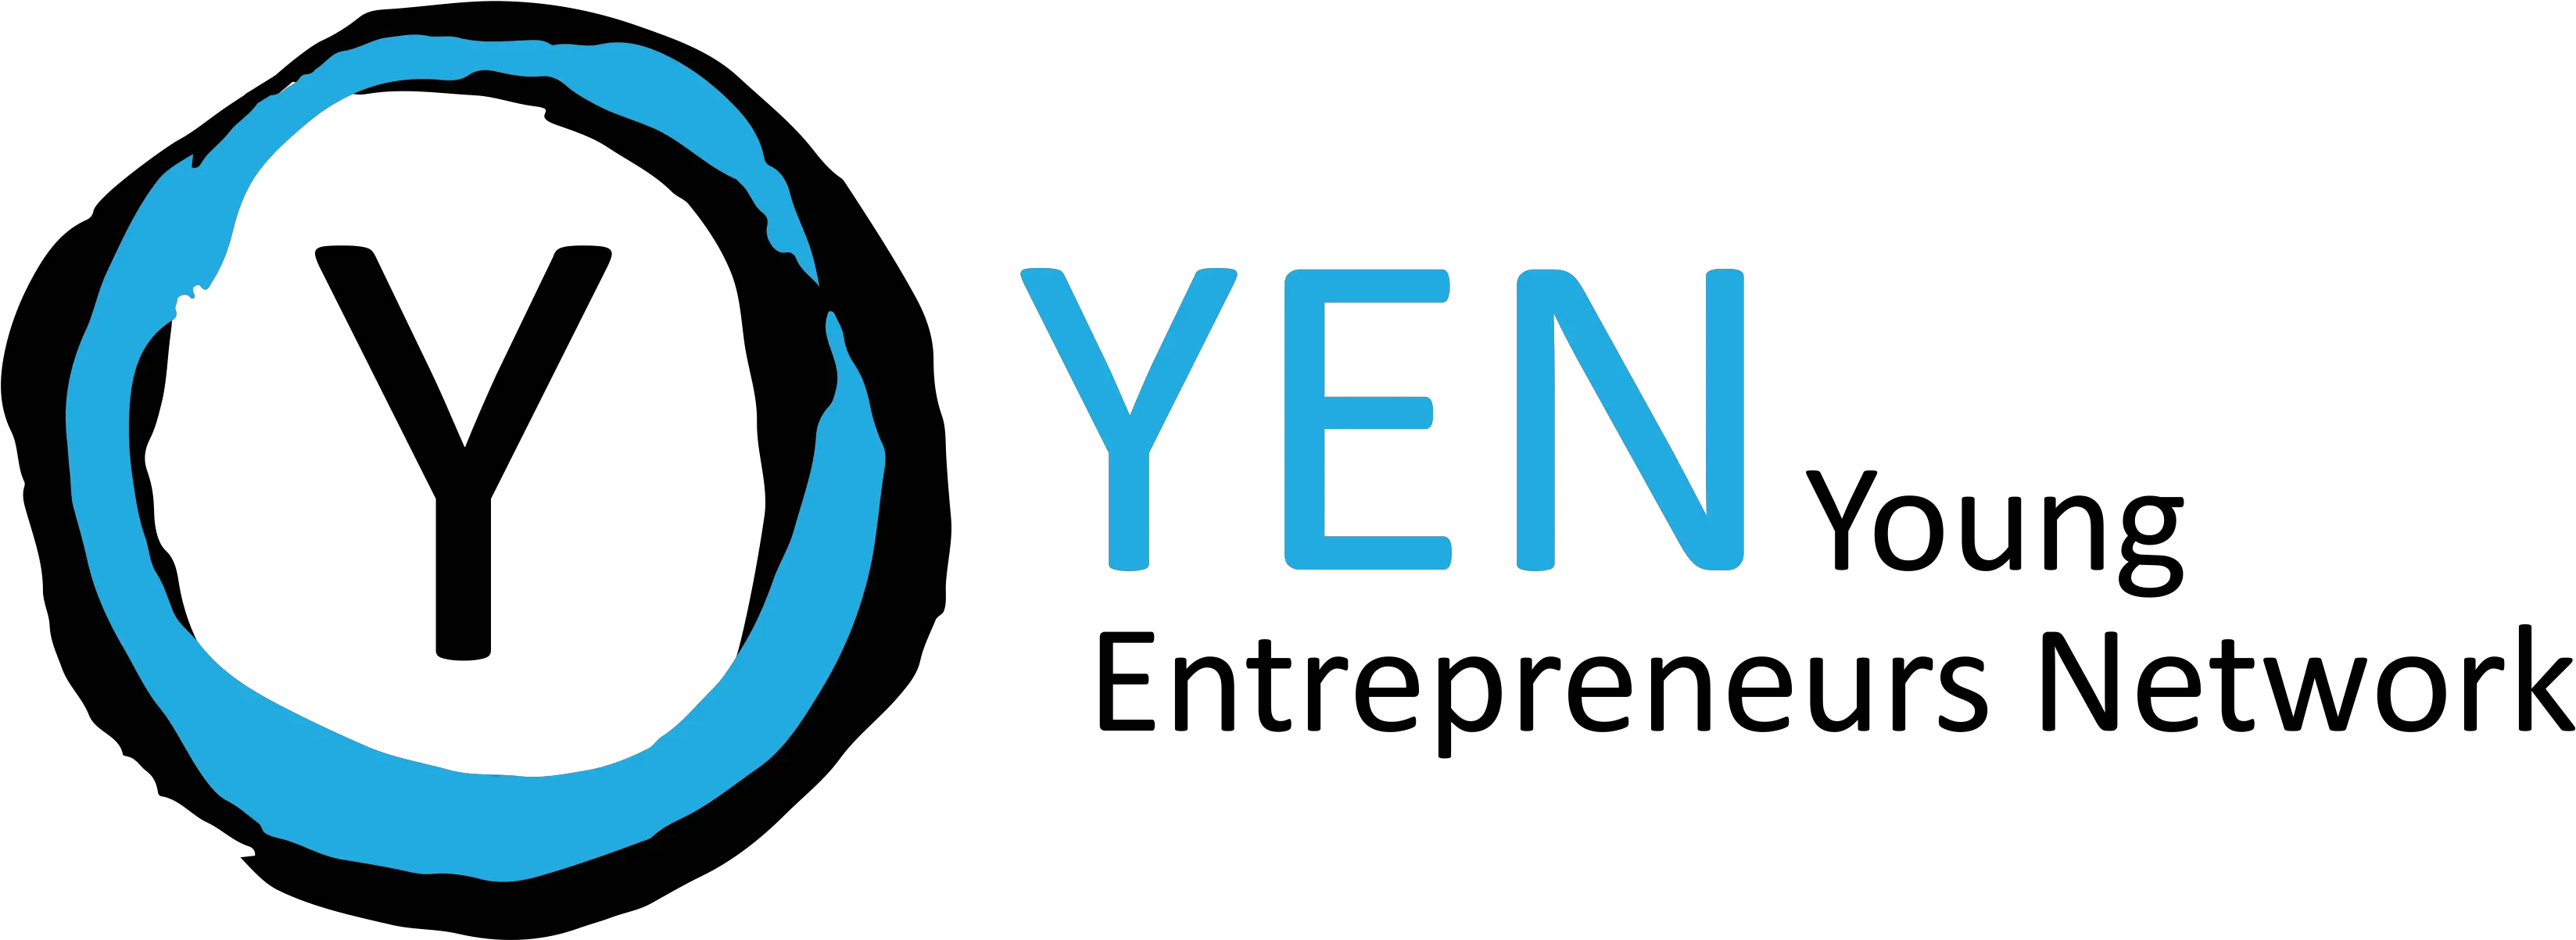 Yen Vertical Png Yen Logo